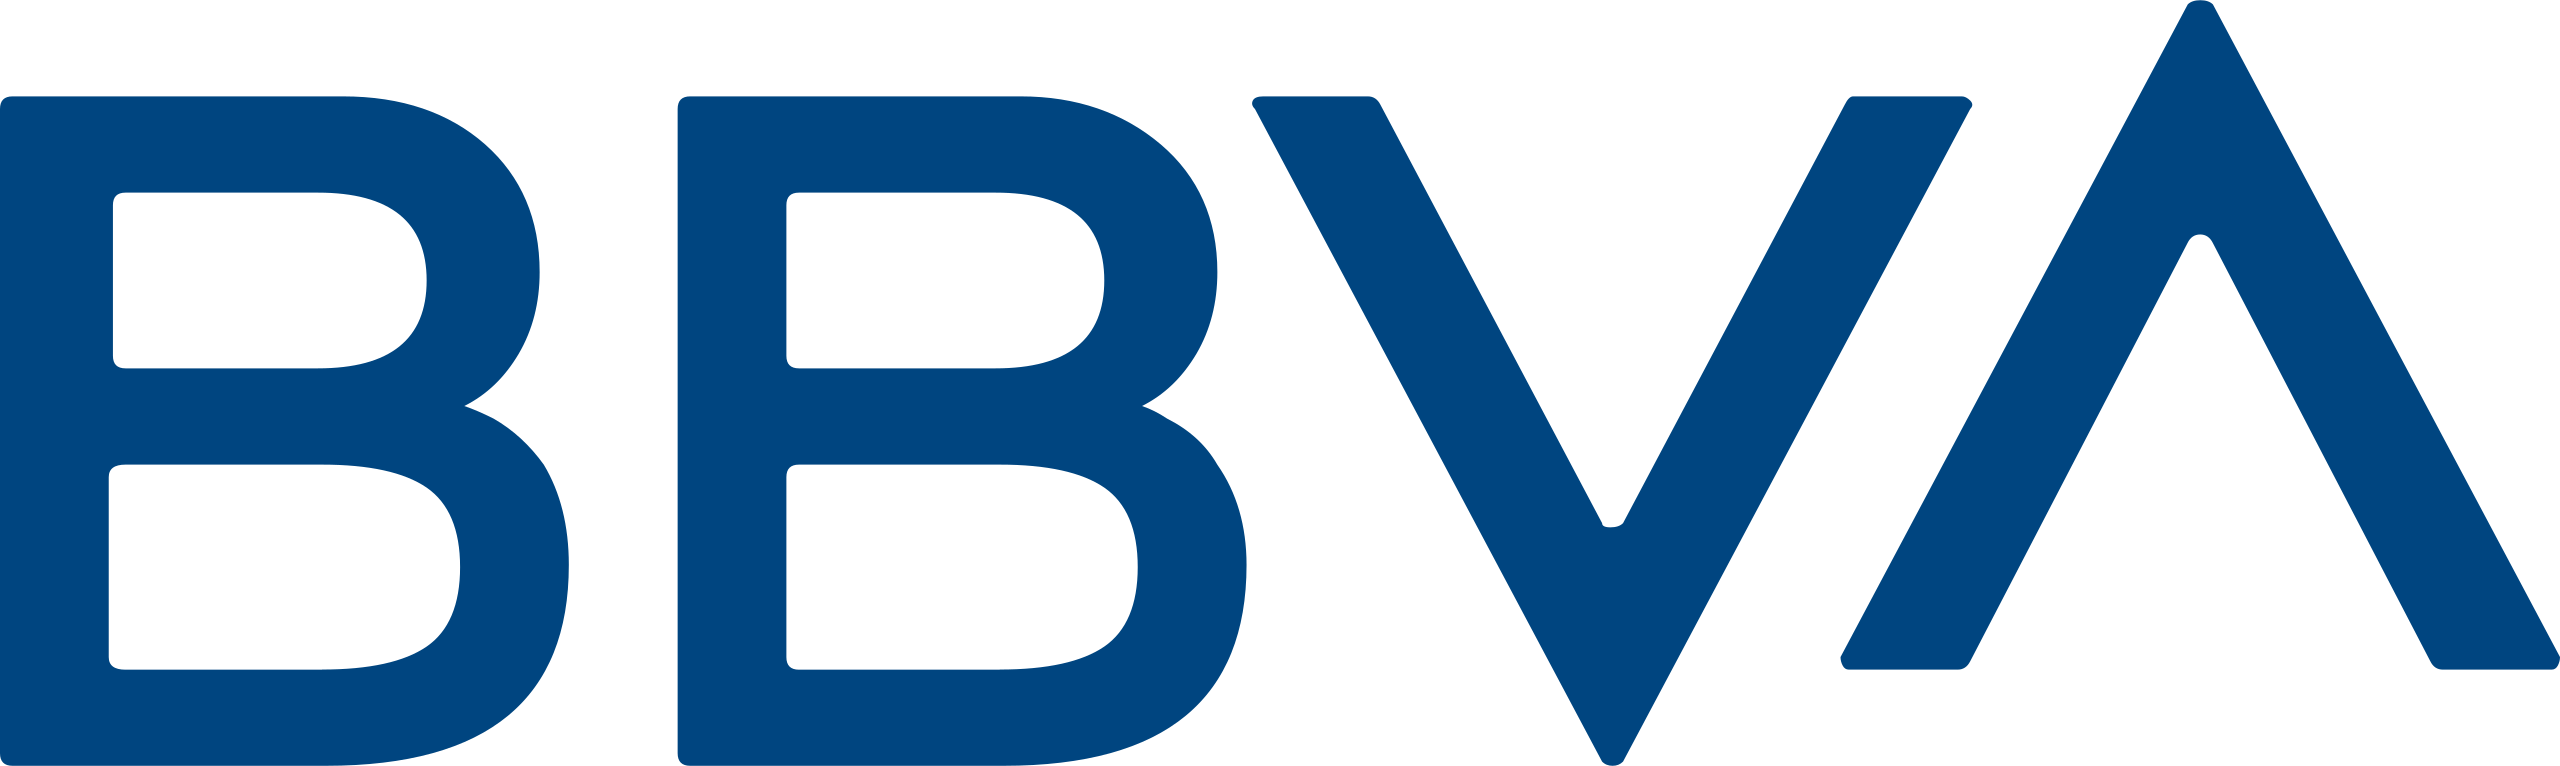 Archivo:BBVA 2019.svg - Wikipedia, la enciclopedia libre